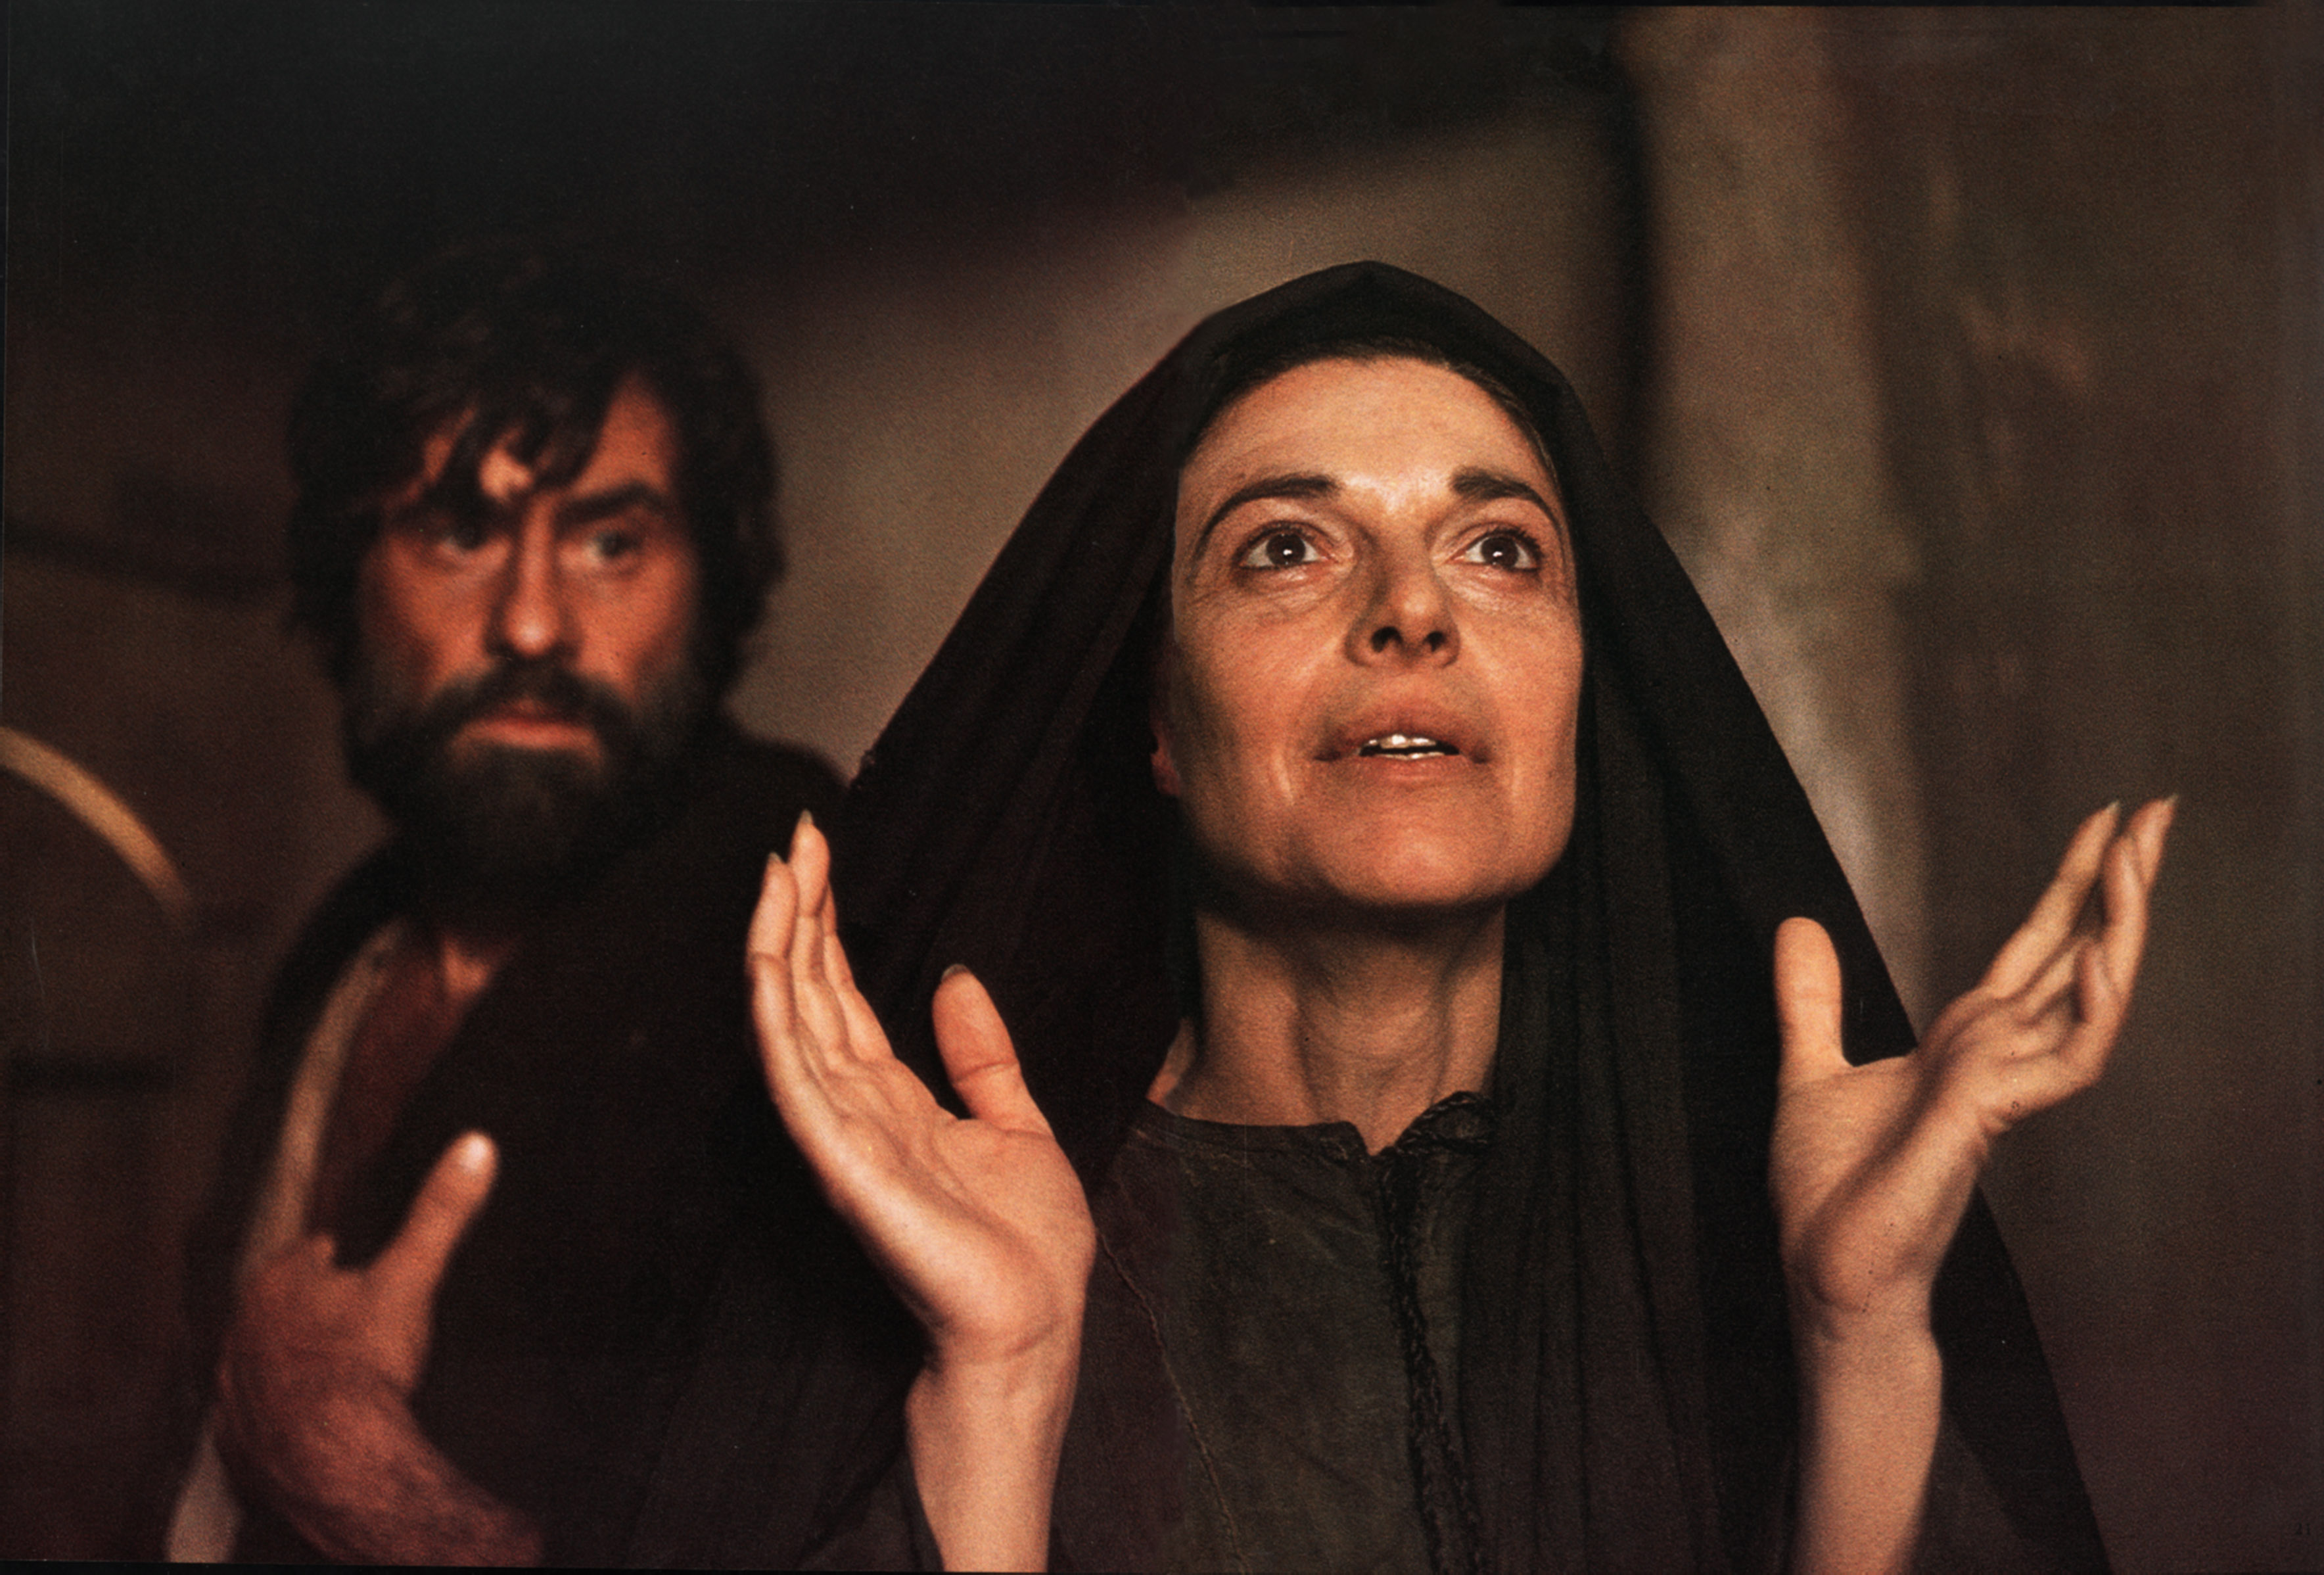 Diretta da Zeffirelli nel "Gesù di Nazareth", 1977